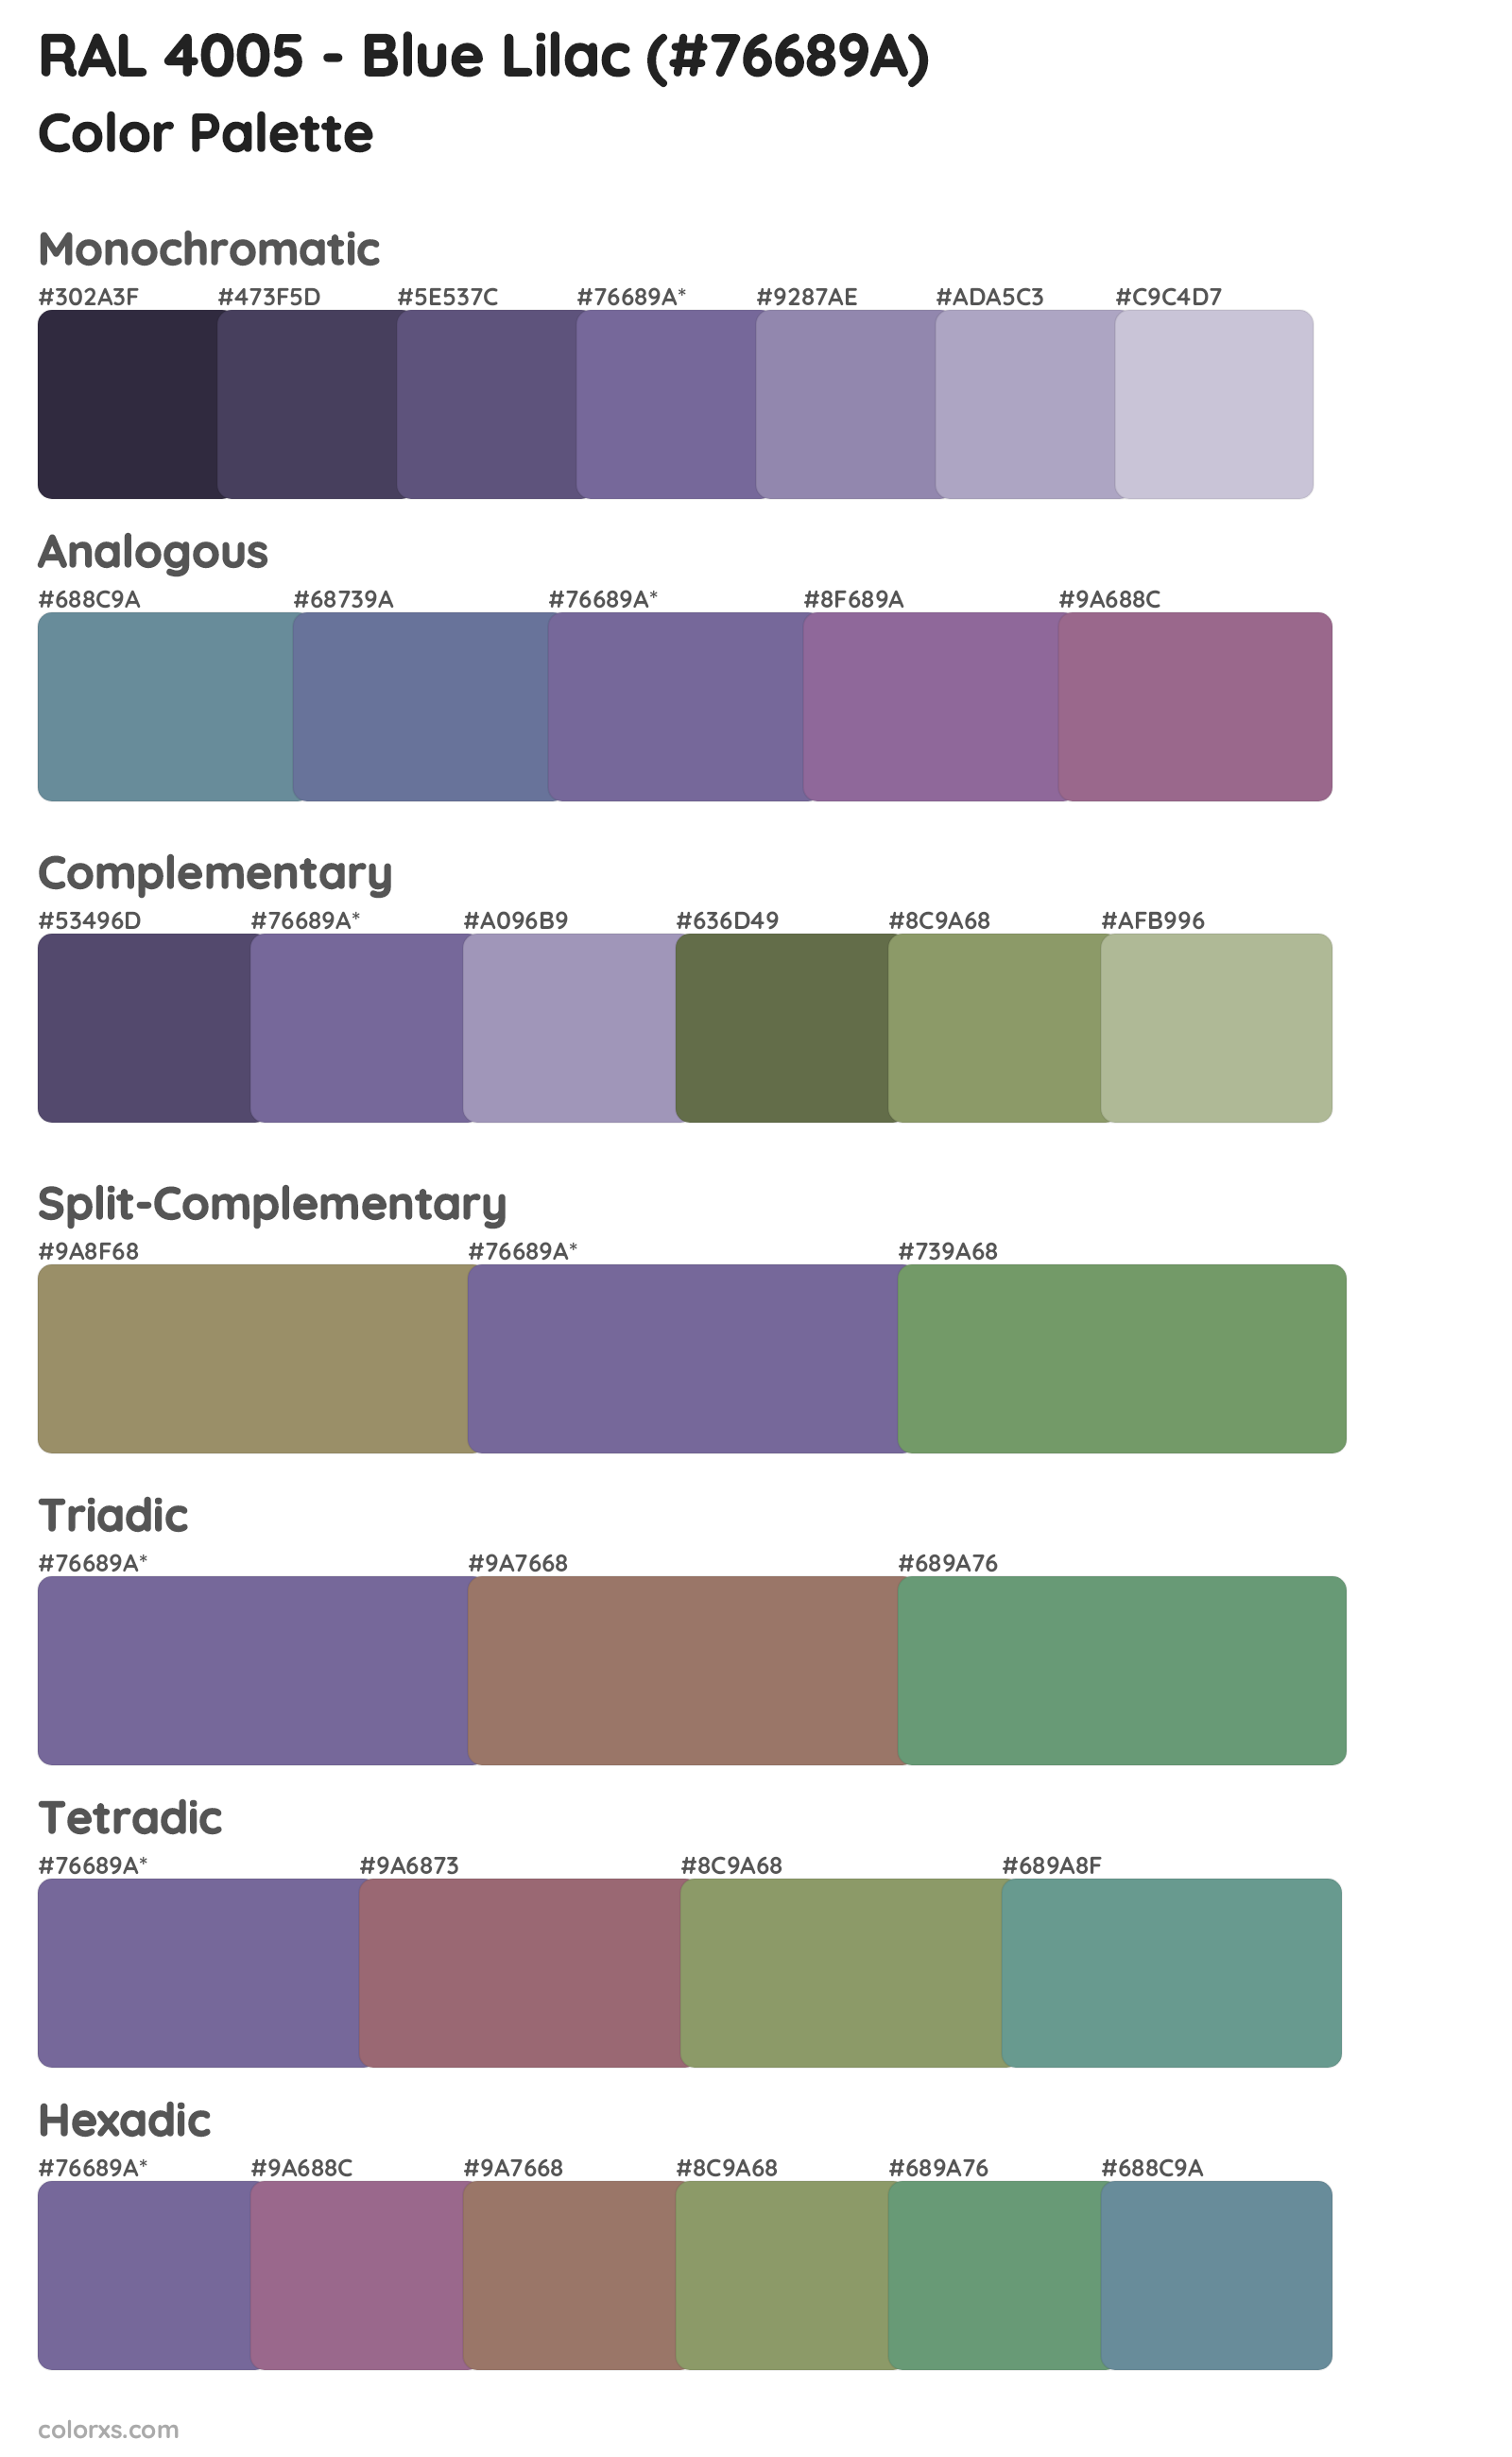 RAL 4005 - Blue Lilac Color Scheme Palettes